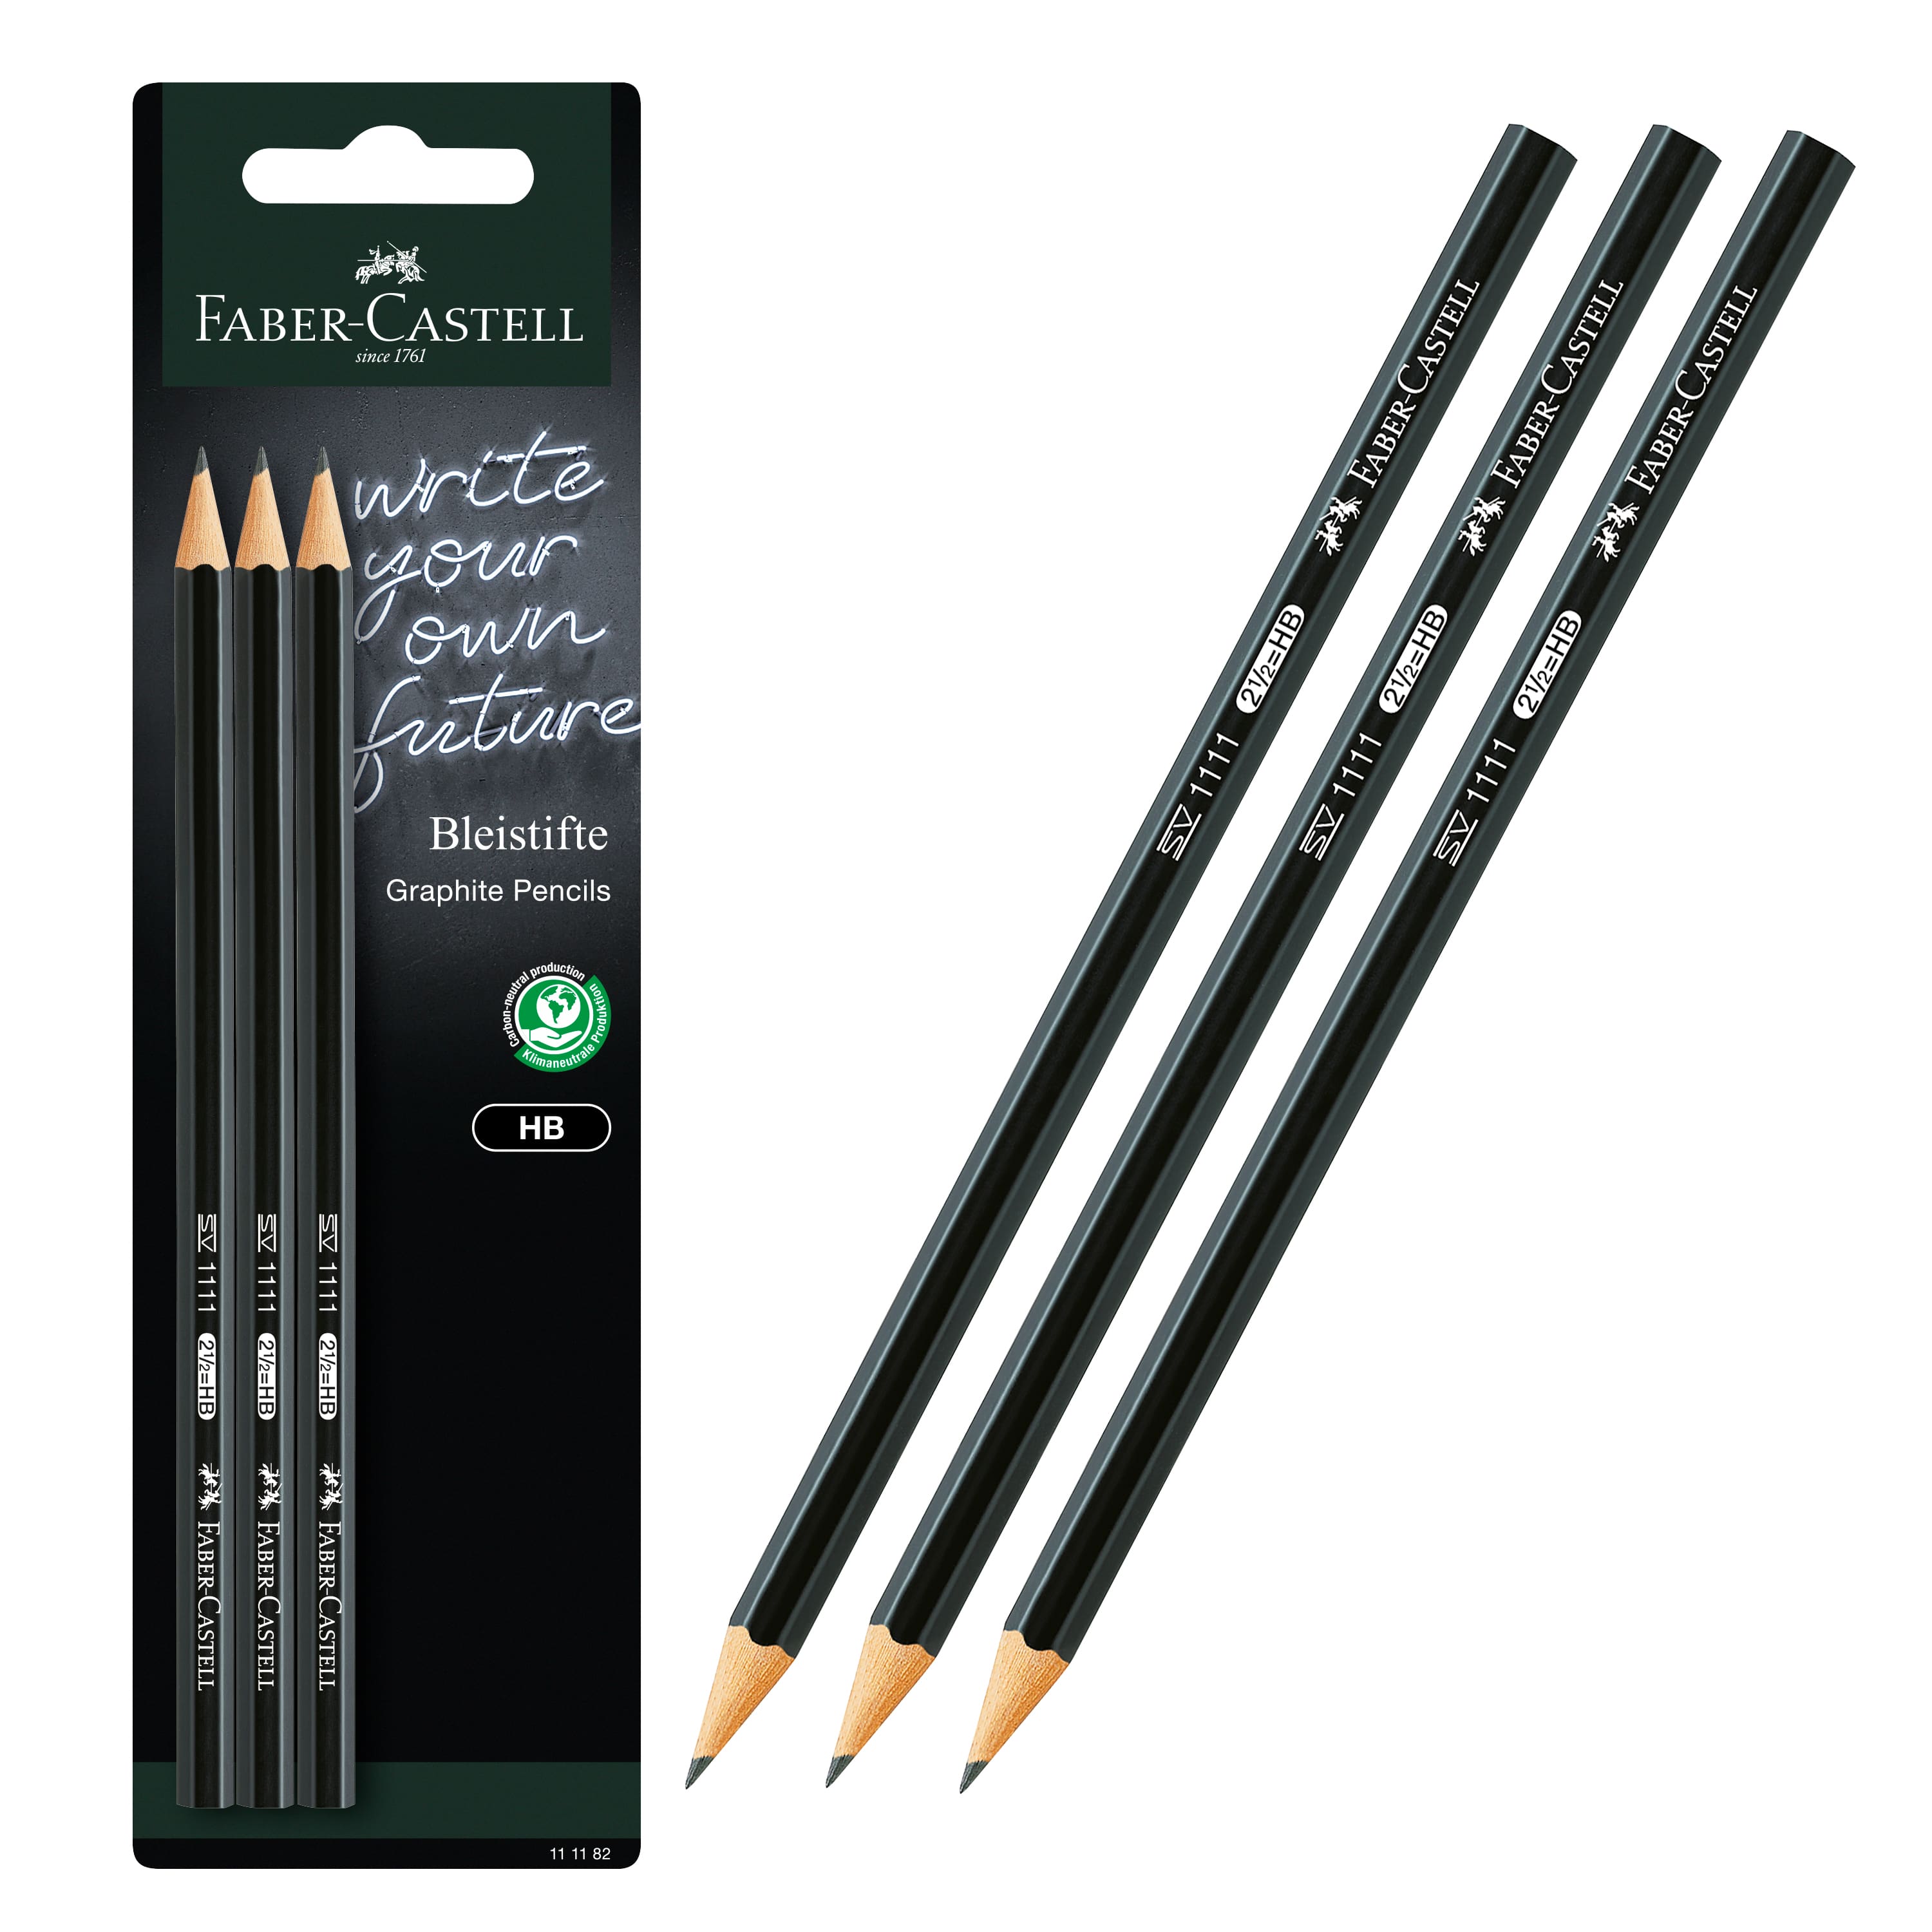 Wynhard Sketching Pencils Drawing Pencil Set for Artist Sketch Pencil Set  Graphite Pencils with Metal Case